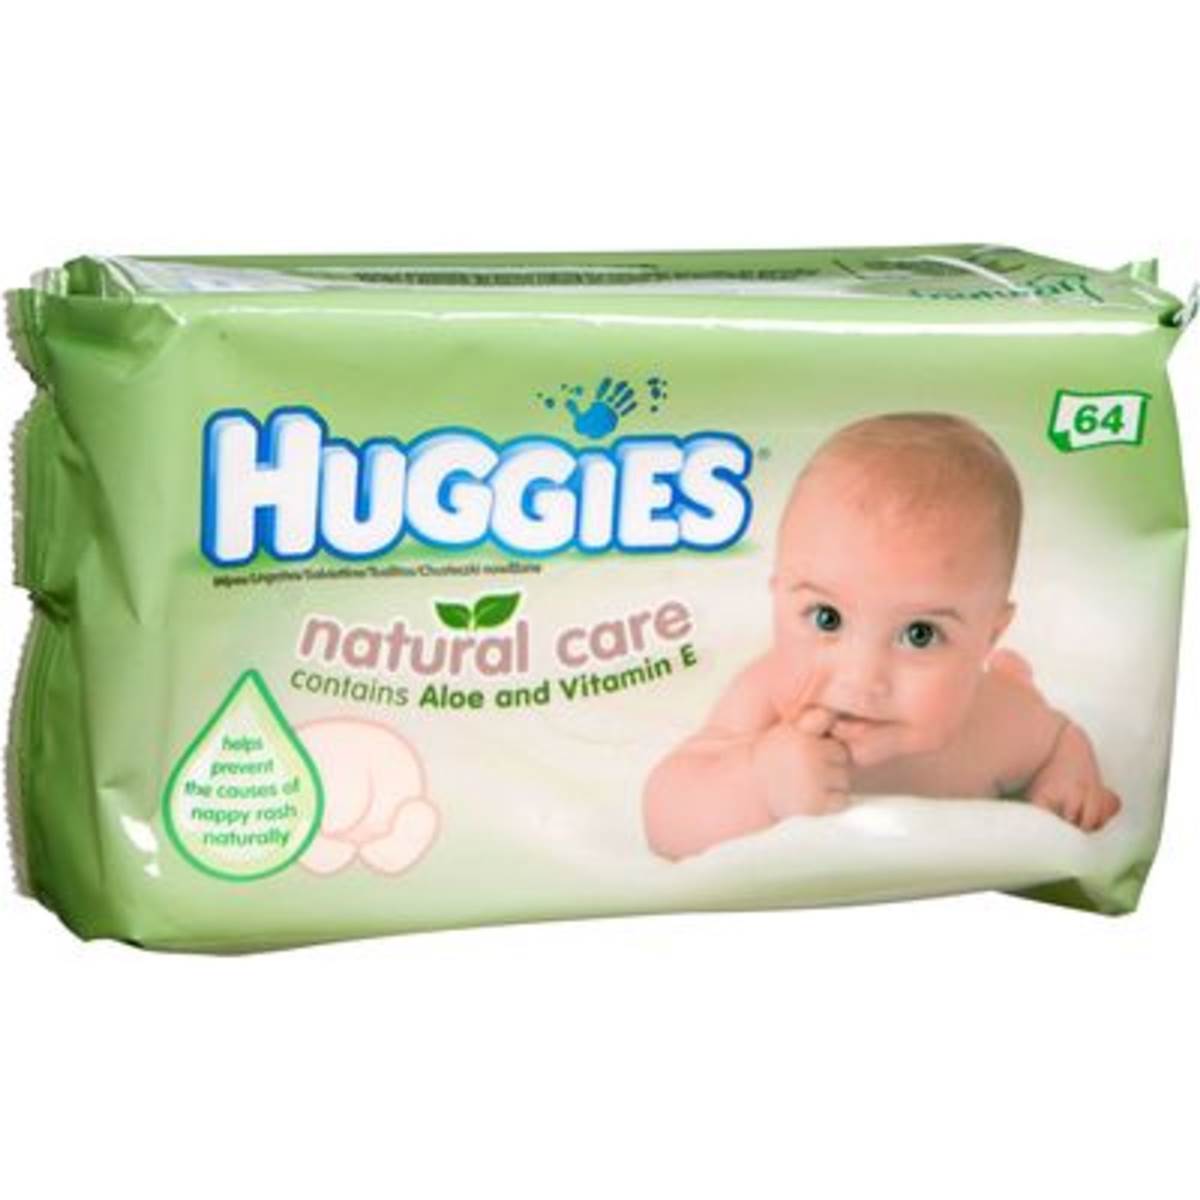 woolworths huggies baby wipes